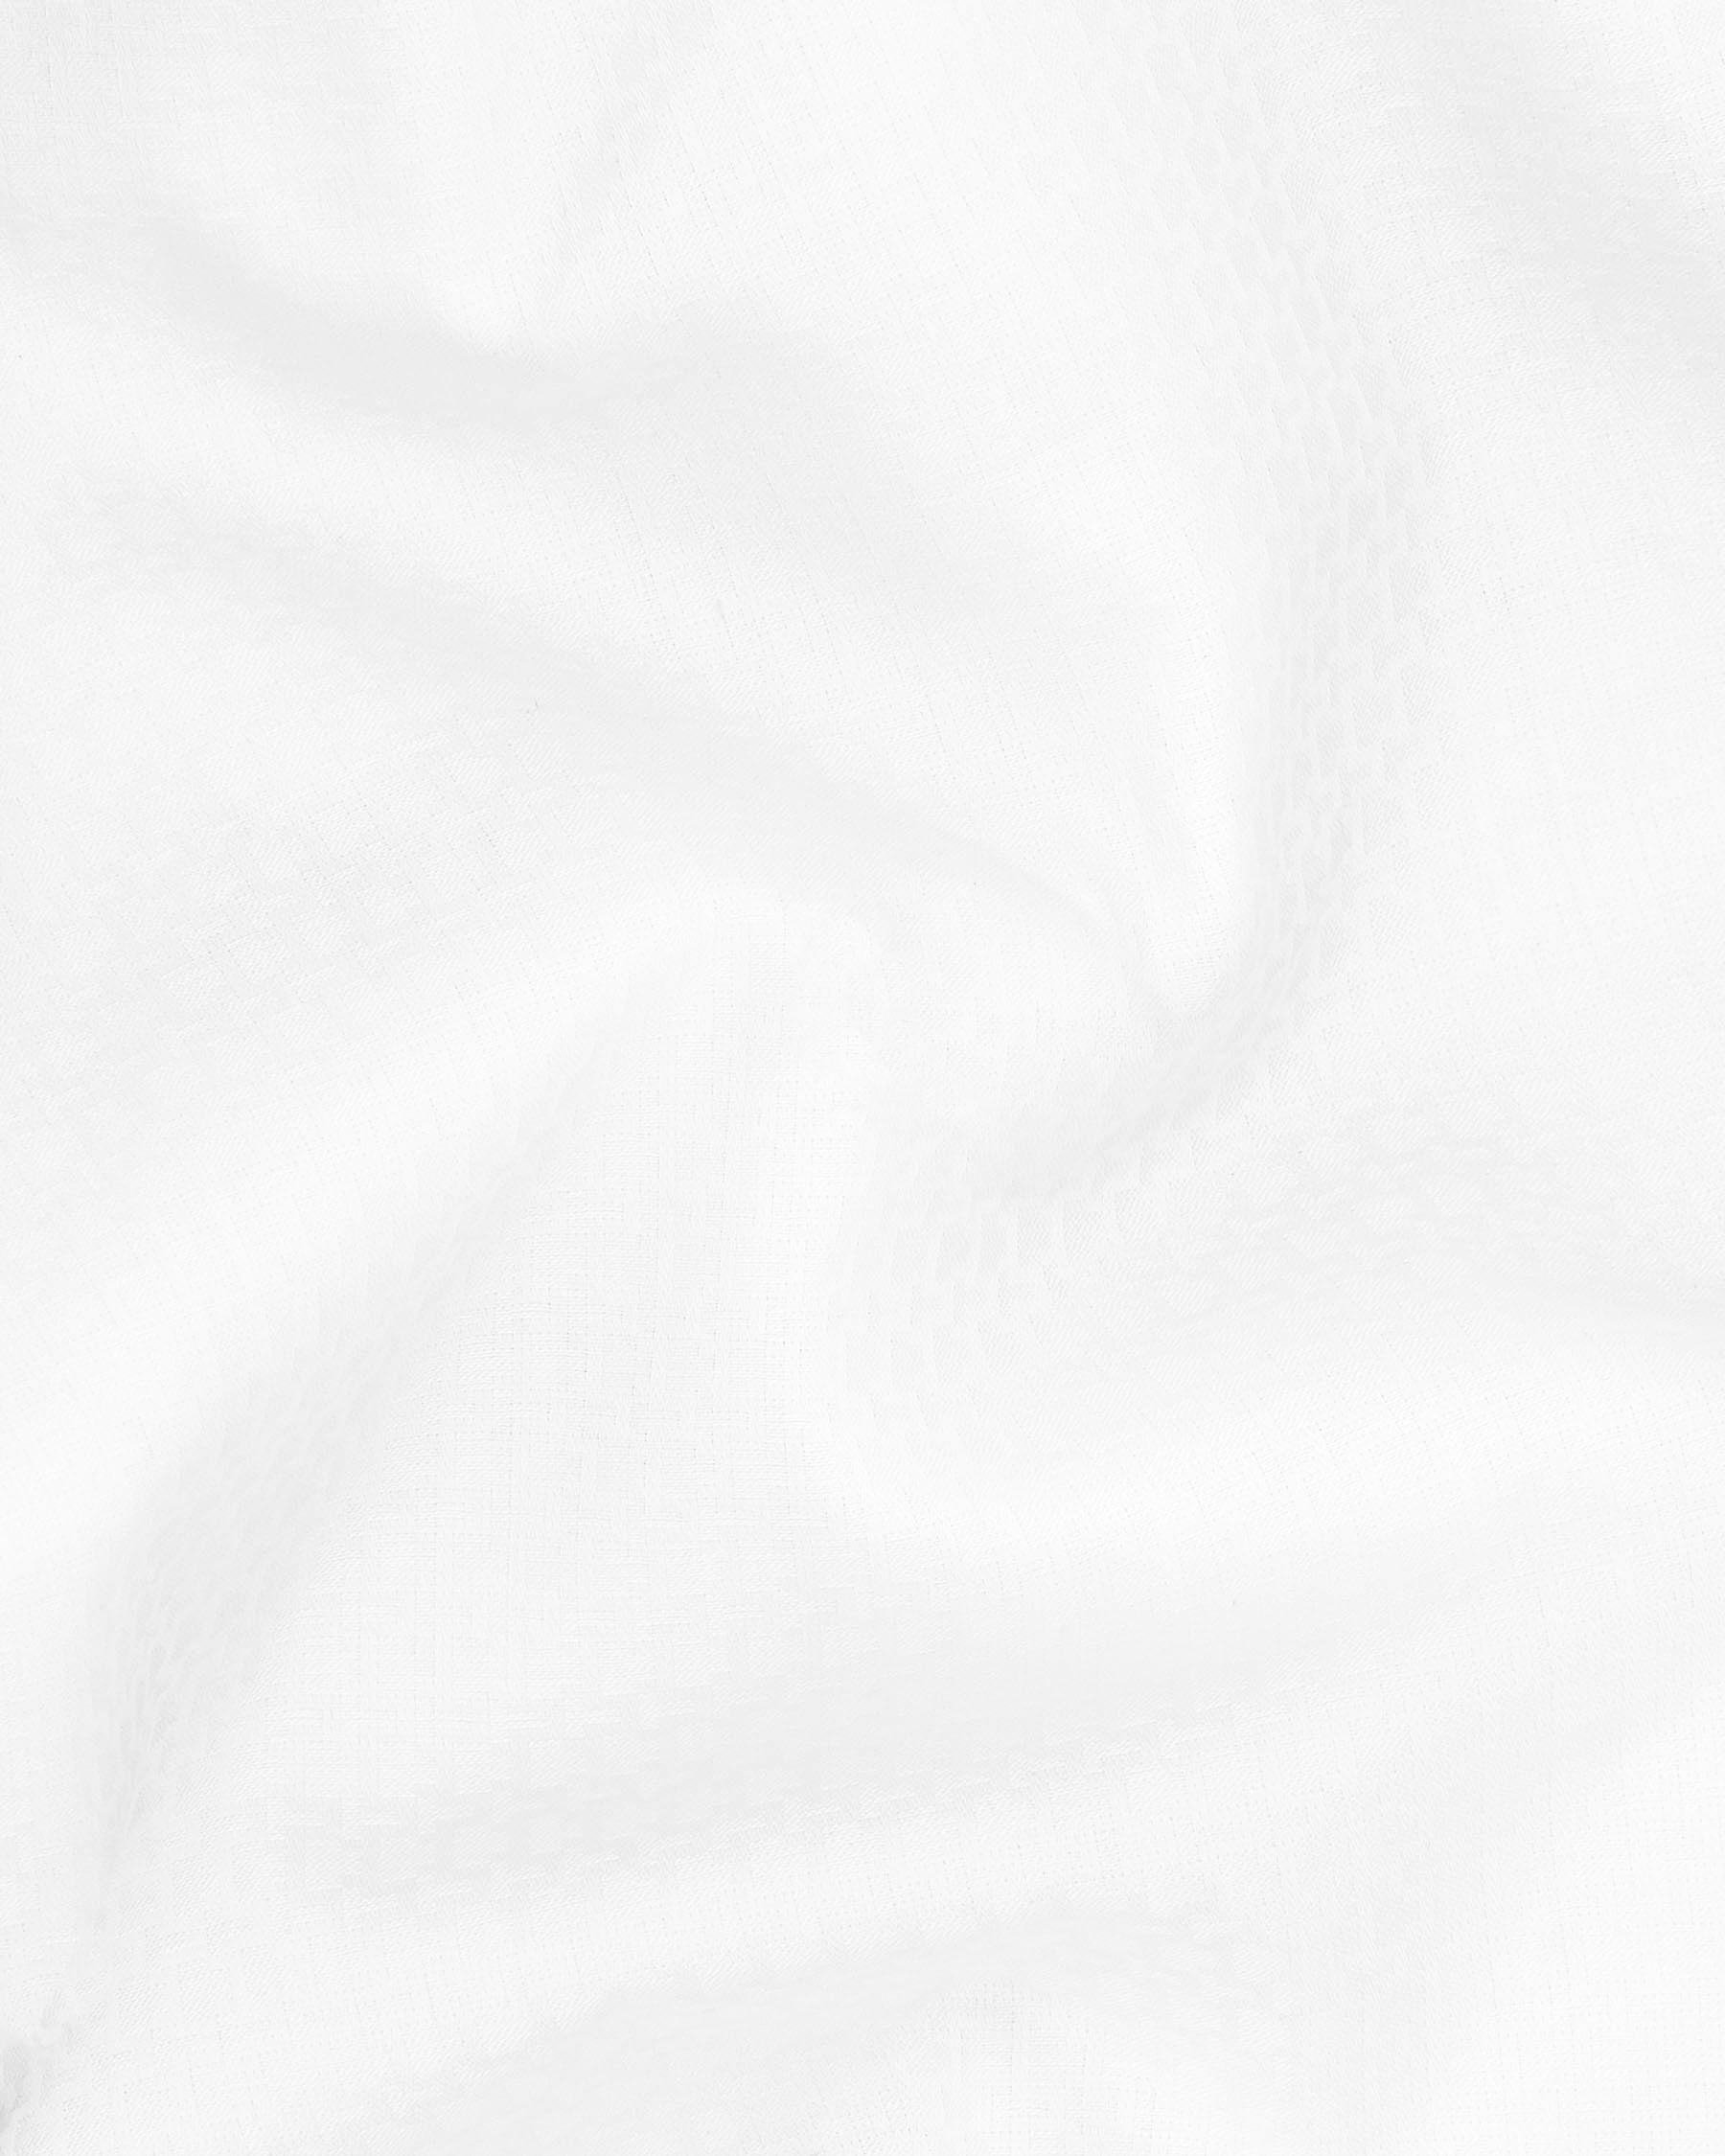 Bright White Dobby Textured Premium Giza Cotton Shirt 6184-CA-38,6184-CA-H-38,6184-CA-39,6184-CA-H-39,6184-CA-40,6184-CA-H-40,6184-CA-42,6184-CA-H-42,6184-CA-44,6184-CA-H-44,6184-CA-46,6184-CA-H-46,6184-CA-48,6184-CA-H-48,6184-CA-50,6184-CA-H-50,6184-CA-52,6184-CA-H-52